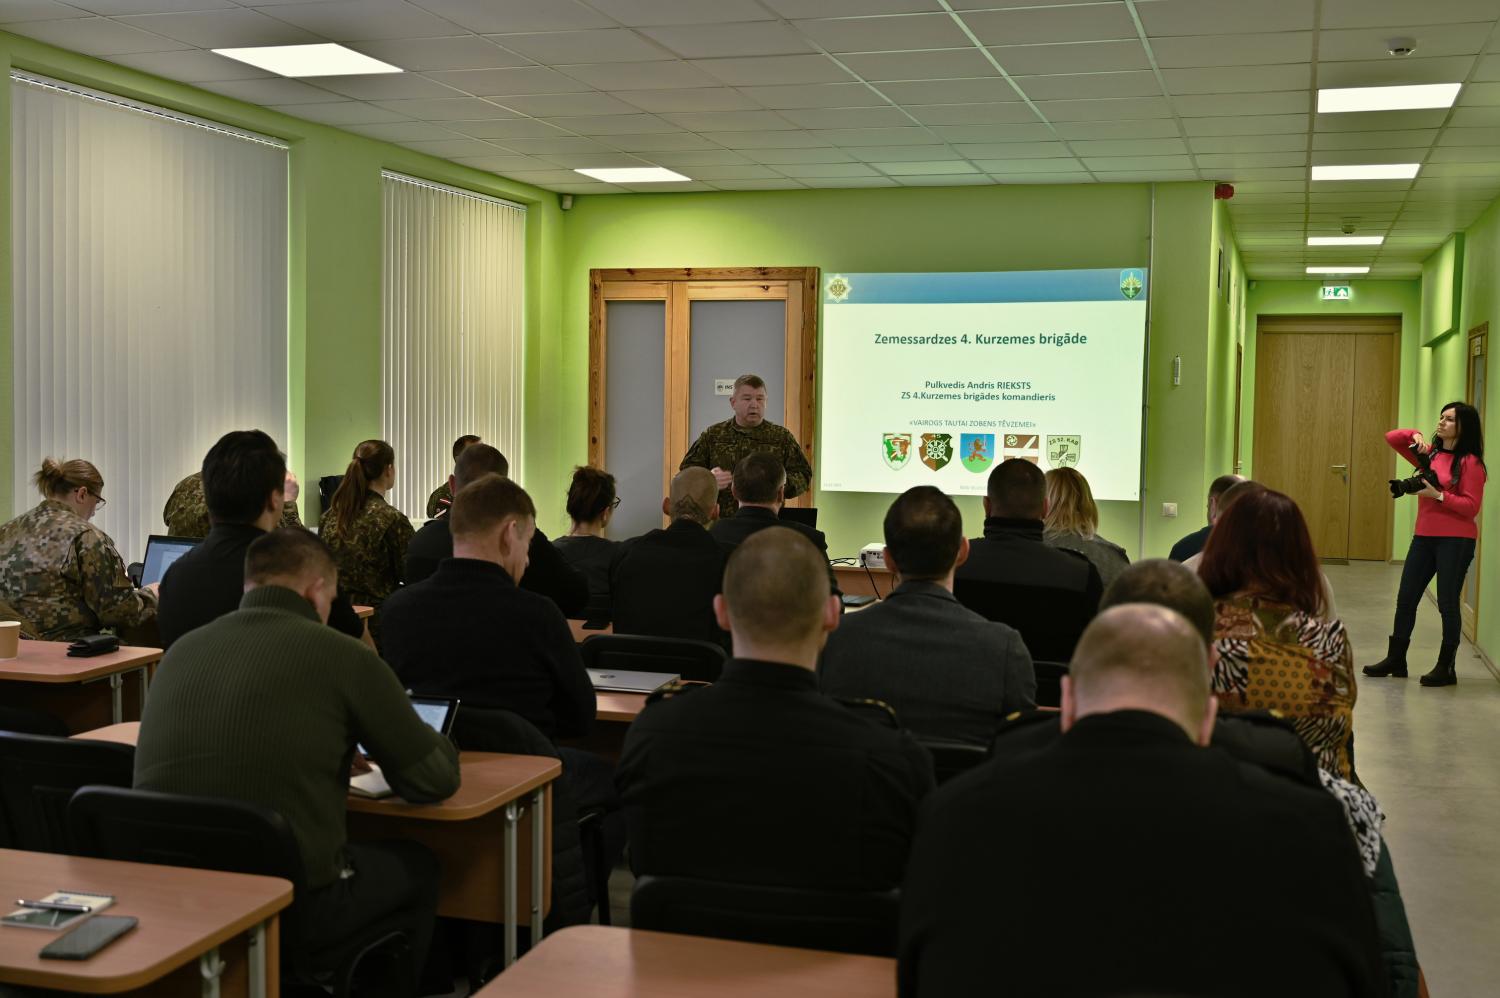 Zemessardzes 4.Kurzemes brigādes komandieris starpinstitucionālās sanāksmes dalībniekiem prezentē ZS4.kurzemes brigādi